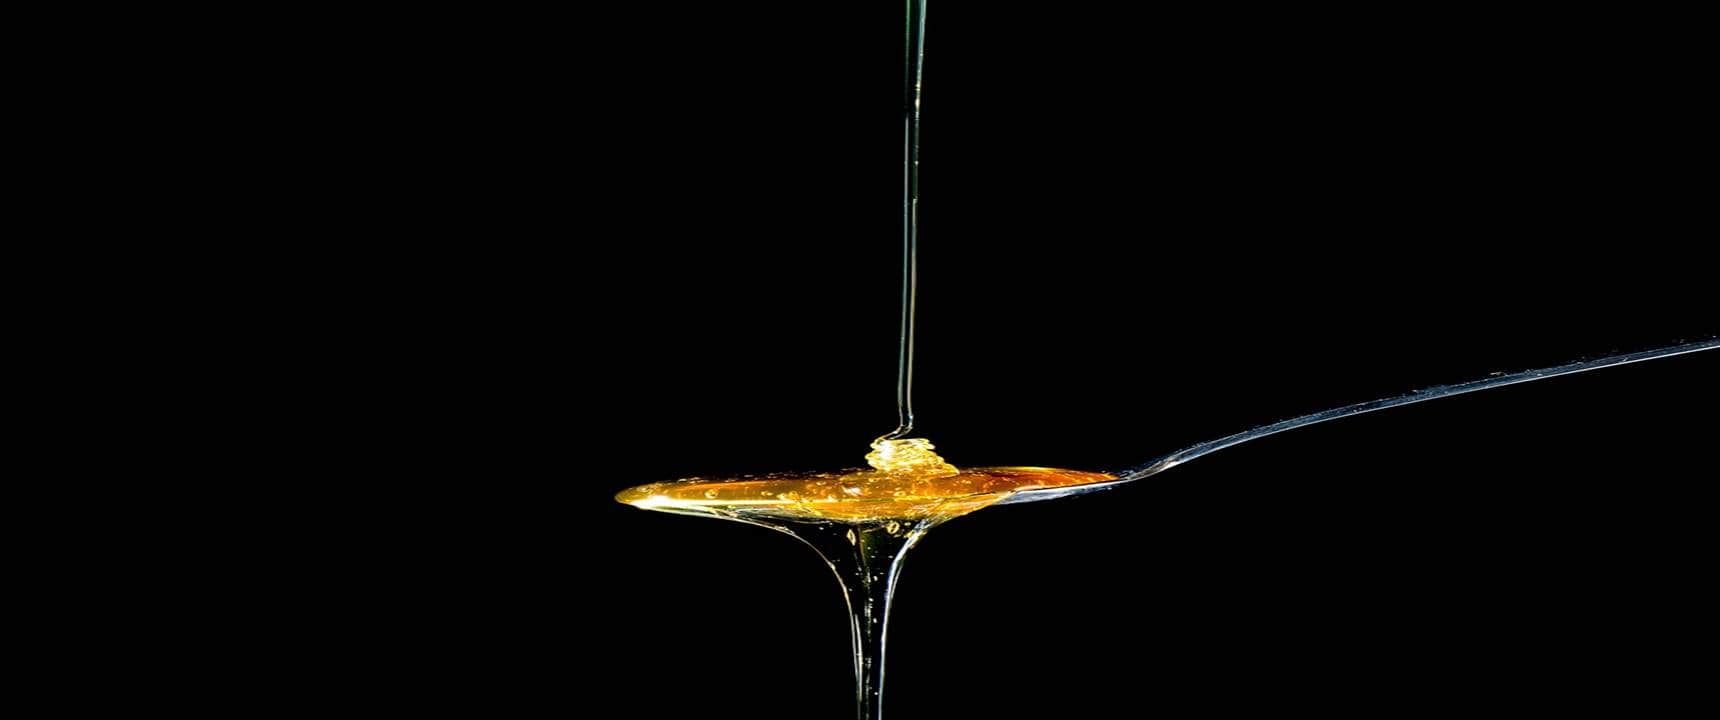 O mel realmente funciona para aliviar a tosse? Saiba mais